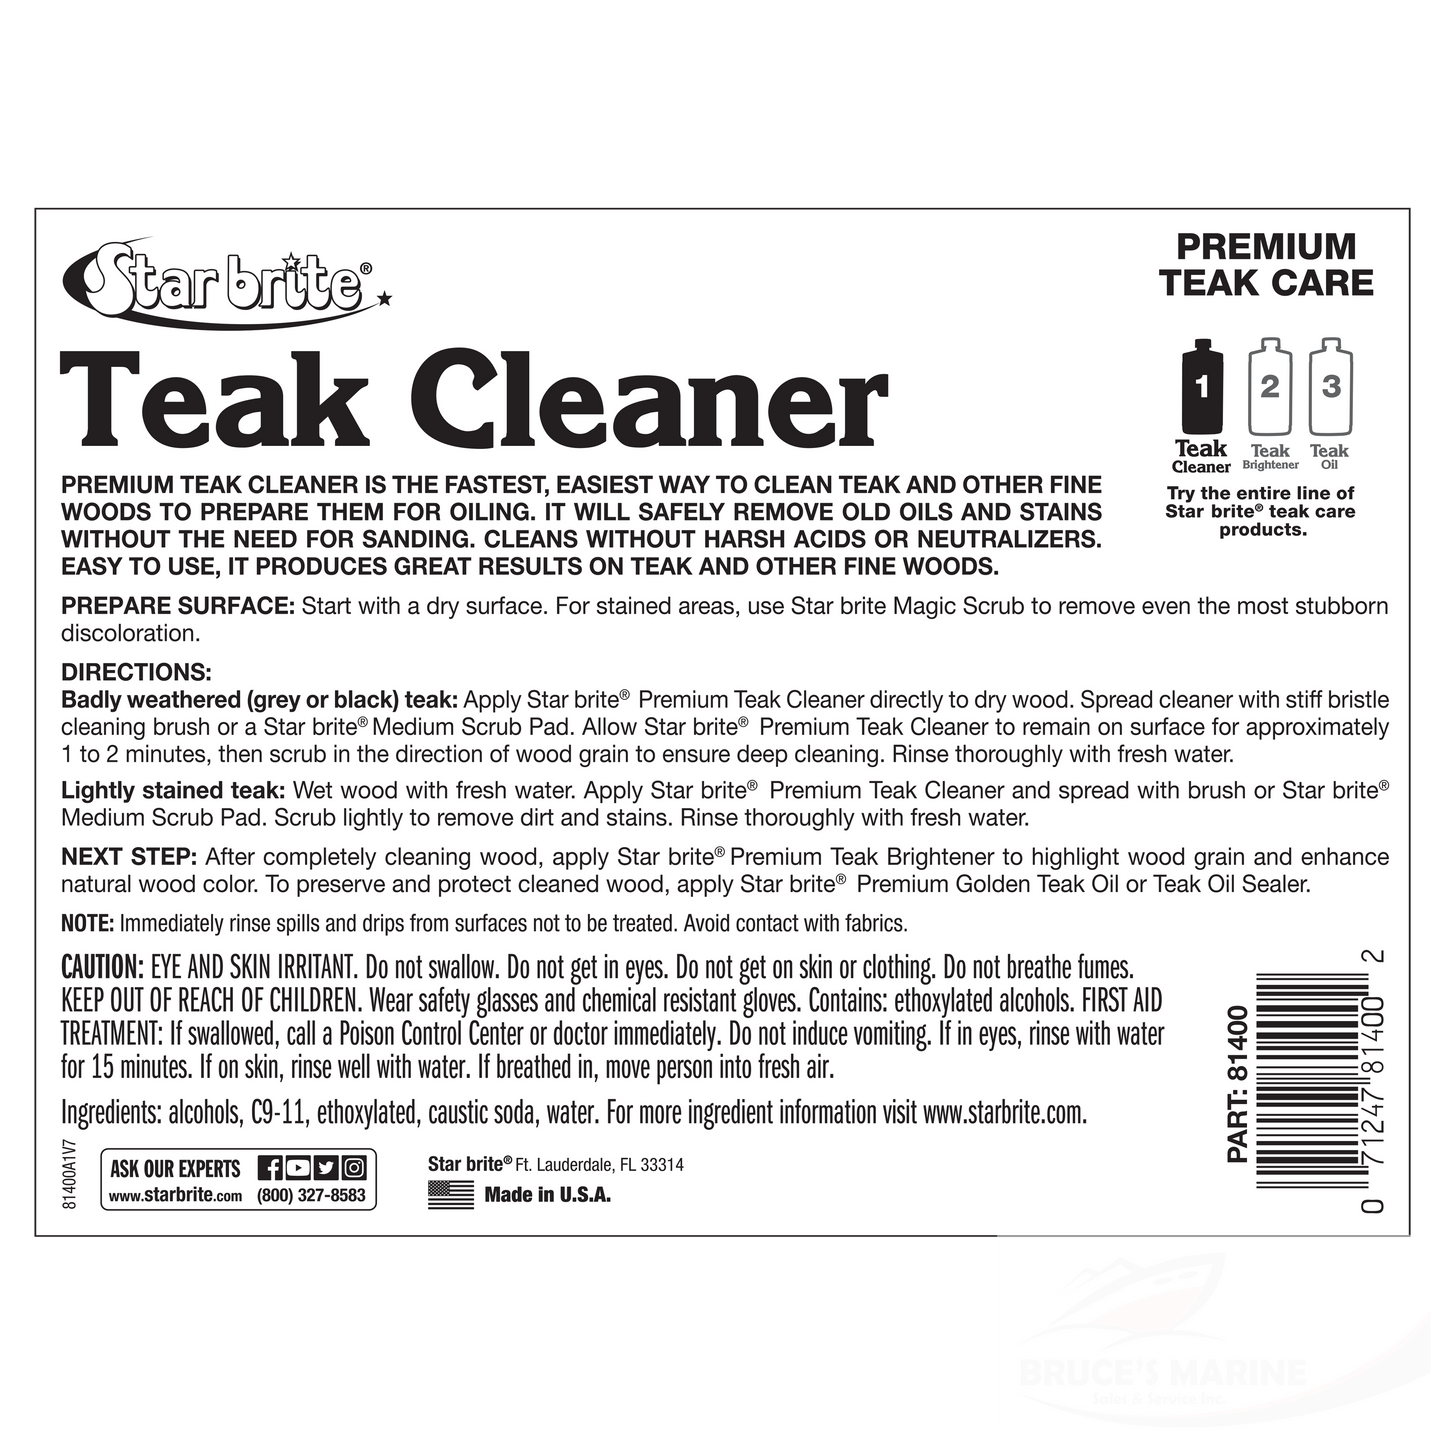 Premium Teak Cleaner - Step 1 - 32 oz